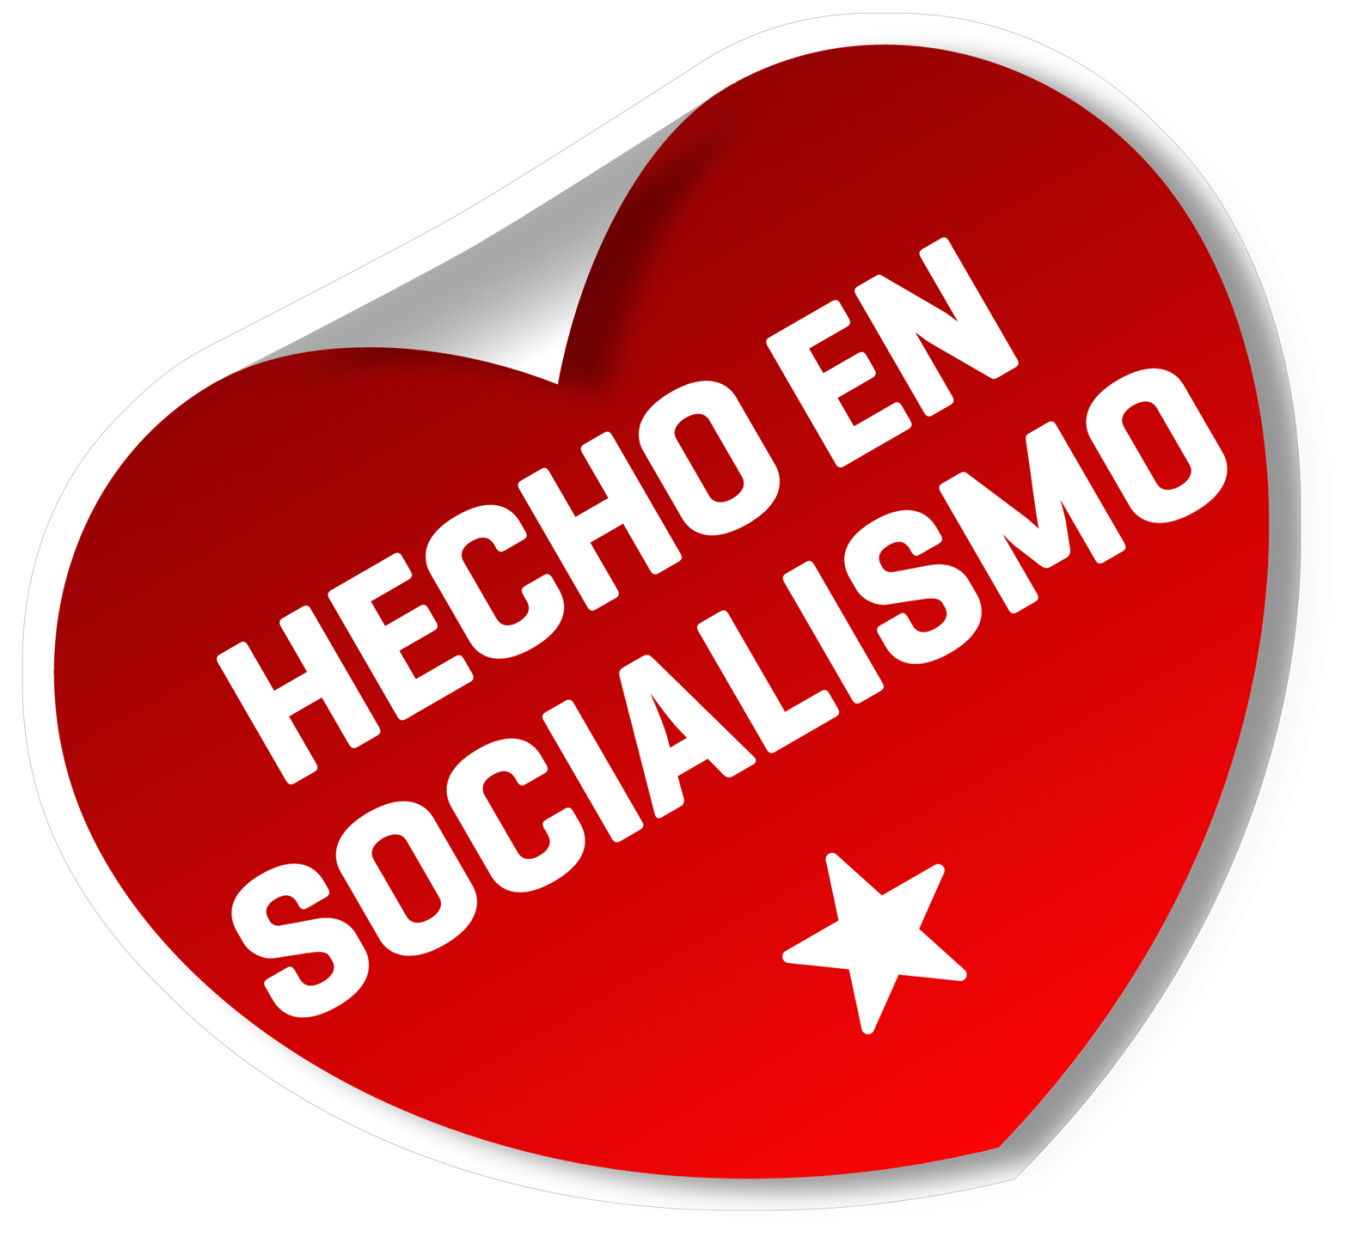 Le président Maduro réaffirme son engagement à construire la patrie socialiste